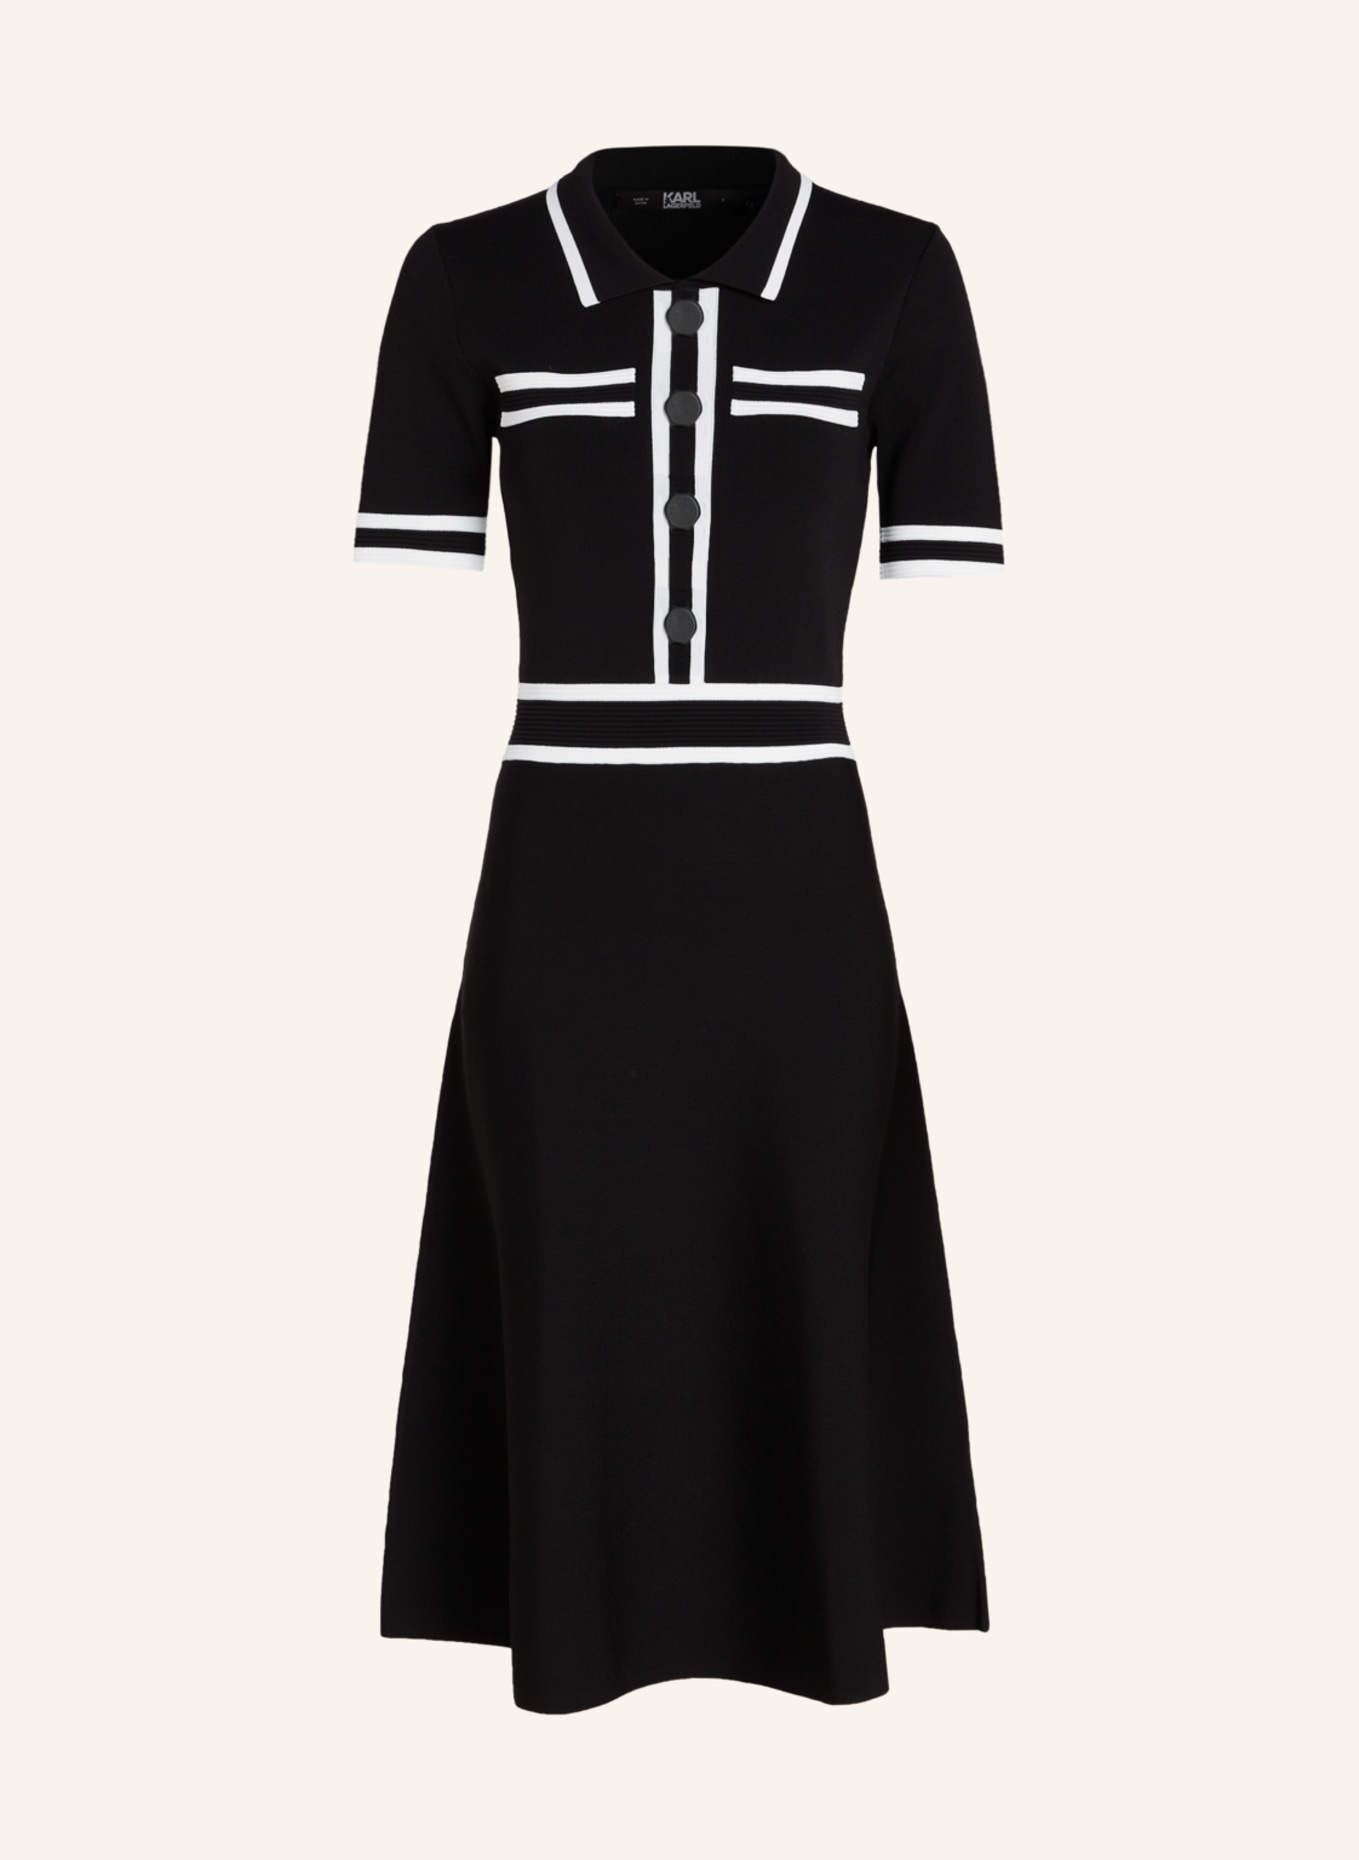 KARL LAGERFELD Kleid, Farbe: SCHWARZ (Bild 1)